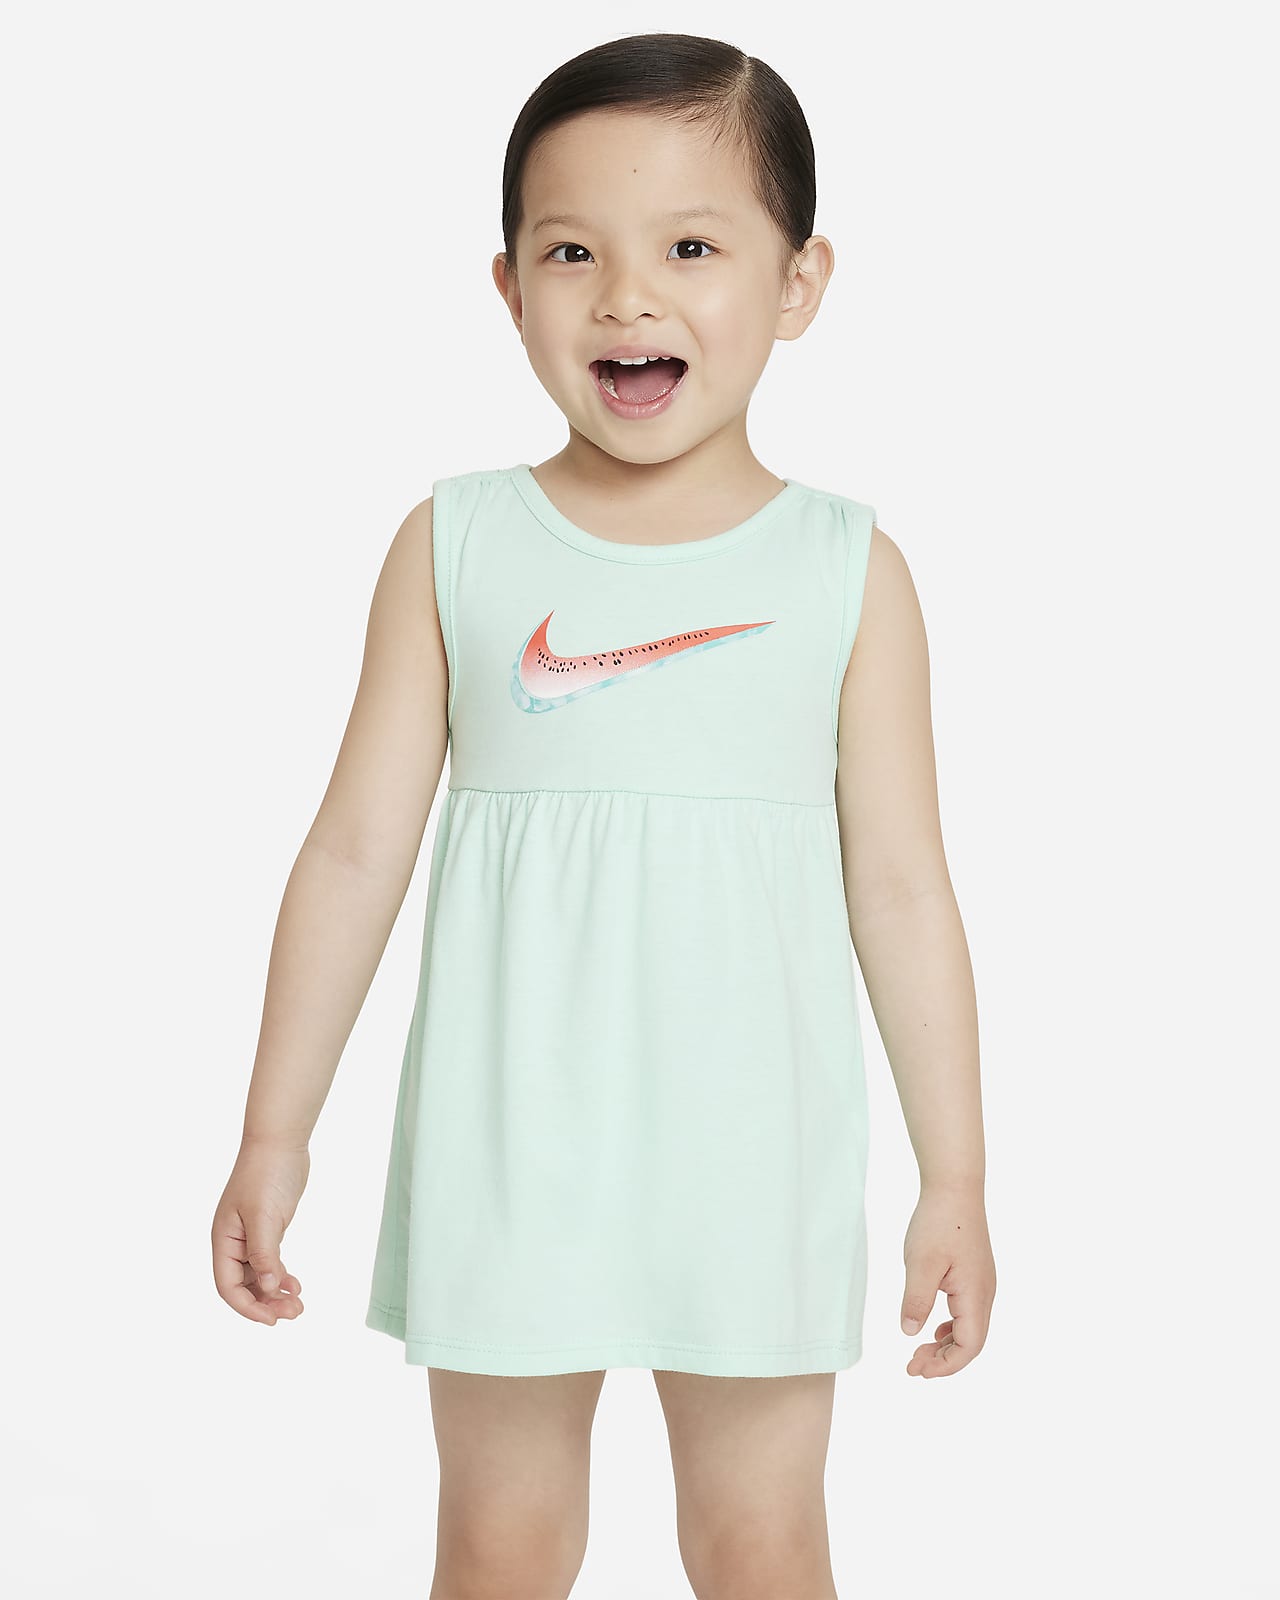 Nike Jurkje voor baby's (12-24 maanden)